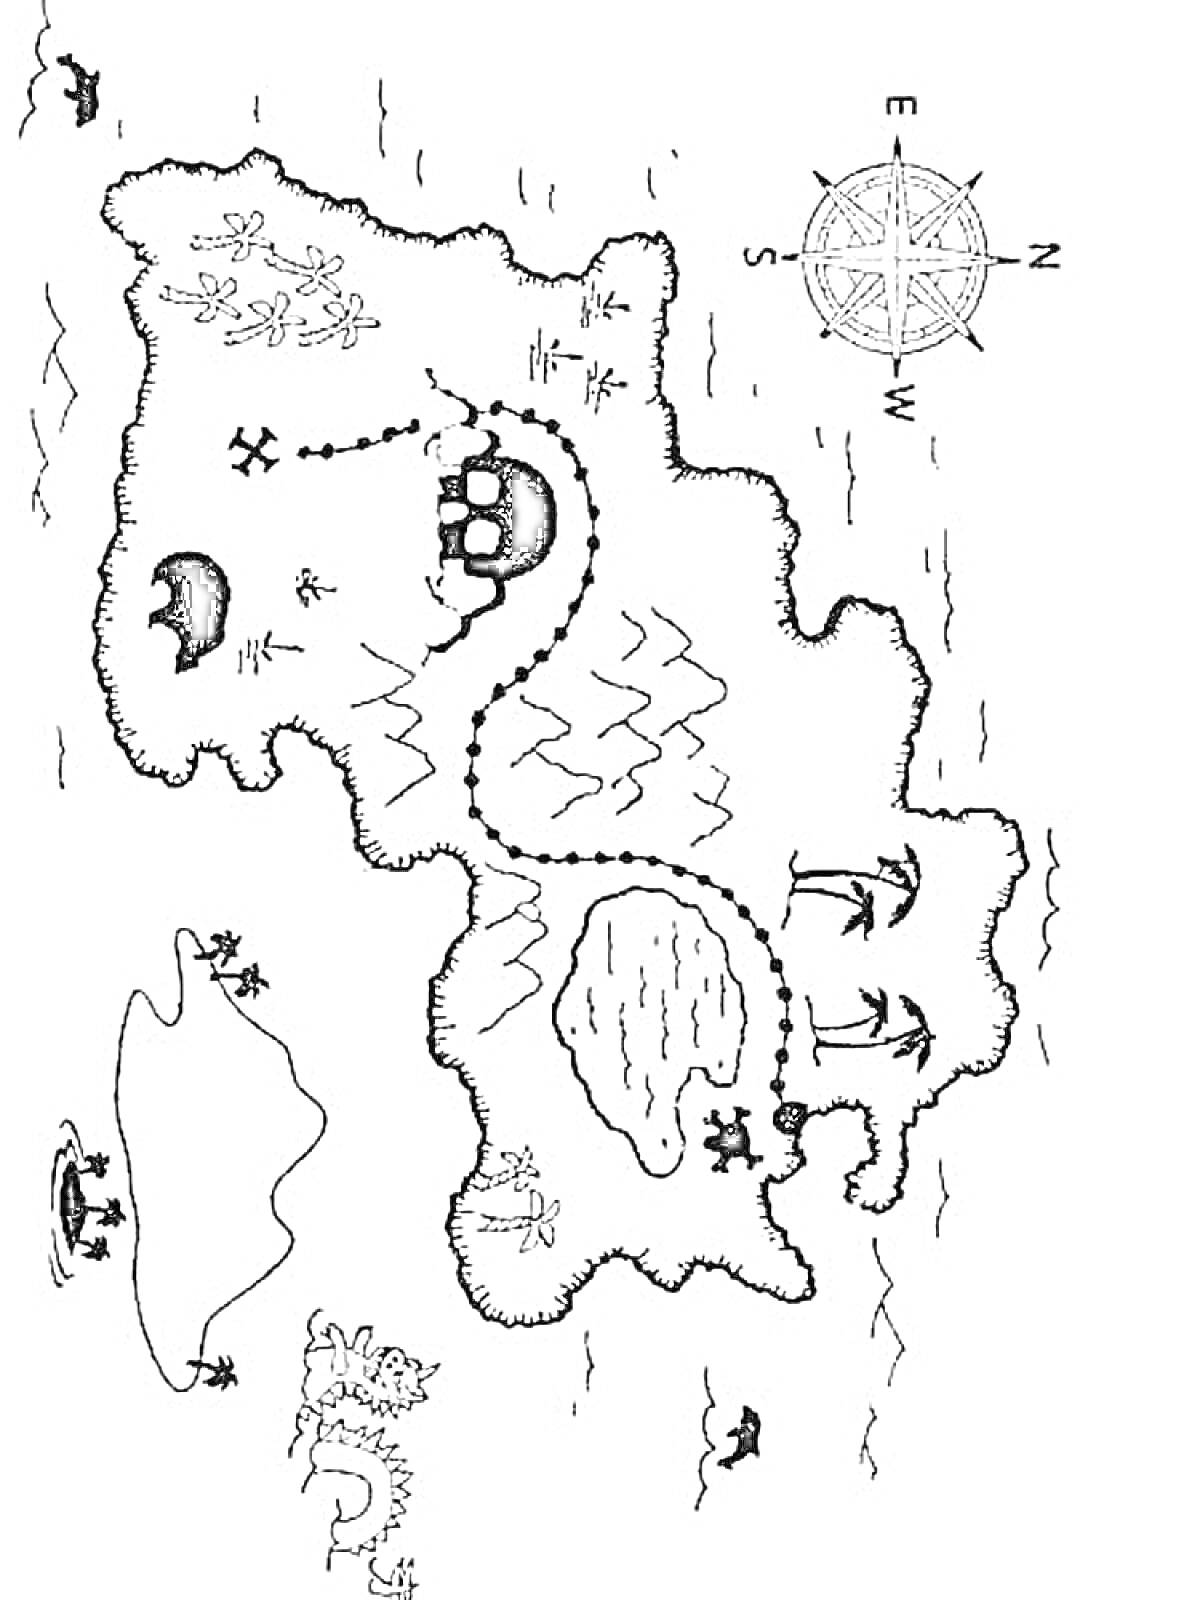 Карта сокровищ с пиратским кораблем, островами с пальмами, компасом, крестиками (